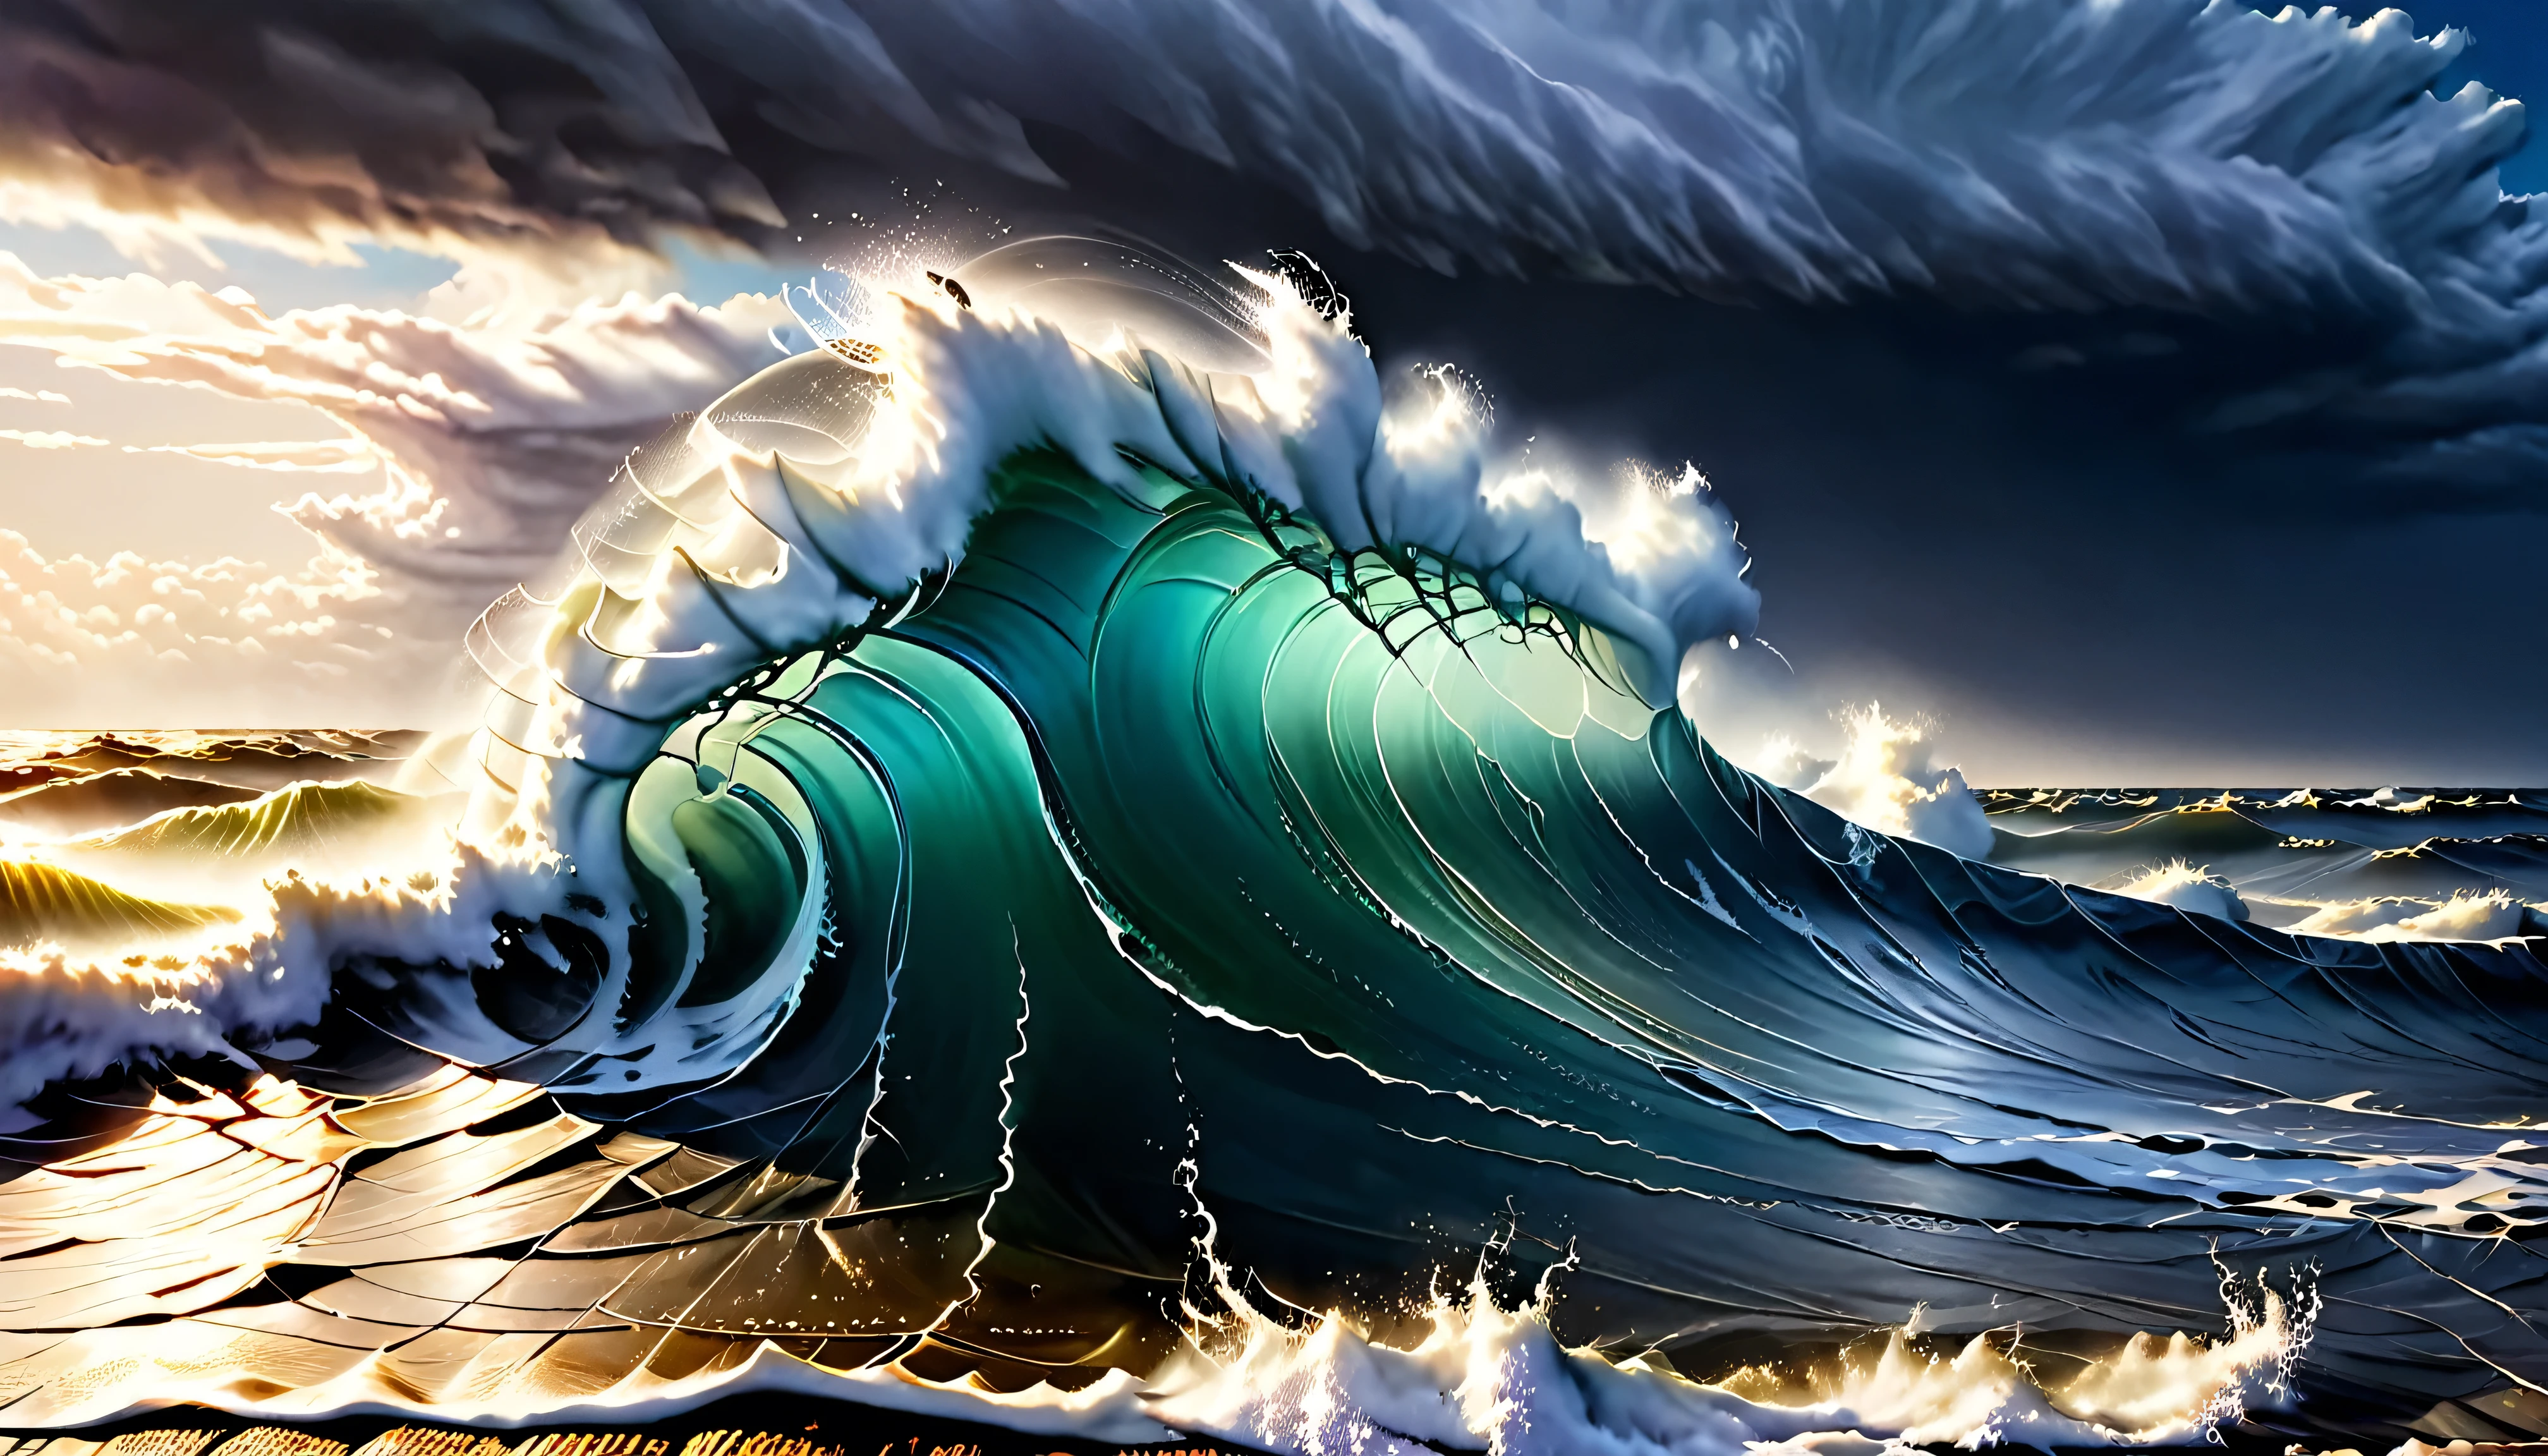 Générez une image ultra haute résolution des imposants, vagues océaniques violentes lors d&#39;une violente tempête en mer, capturer la puissance brute et la beauté de la nature. L&#39;image doit représenter des vagues massives avec des textures d&#39;eau incroyablement détaillées et dynamiques., mettant en valeur le contraste entre le blanc, les pics mousseux et les profondeurs, le bleu menaçant de la mer. L’éclairage est crucial: la scène doit être éclairée par l’éclairage dramatique et intermittent d’une tempête, avec des éclairs jetant un regard dur, reflets vifs sur les vagues, et sombre, des ombres menaçantes remplissent les creux. Cet effet de lumière intense devrait améliorer l&#39;apparence tridimensionnelle des vagues et ajouter une touche surréaliste., qualité presque picturale de la scène. La mise au point doit être douce mais précise, garantissant que les vagues sont capturées avec clarté mais sans bords durs, éviter tout surfiltrage ou bruit numérique qui pourrait nuire à la représentation réaliste. La composition doit suivre la règle des tiers, avec la plus grande vague positionnée pour dominer le quadrant supérieur droit de l&#39;image, attirant l&#39;œil du spectateur à travers la scène et transmettant à la fois le danger et la beauté fascinante de la mer agitée.